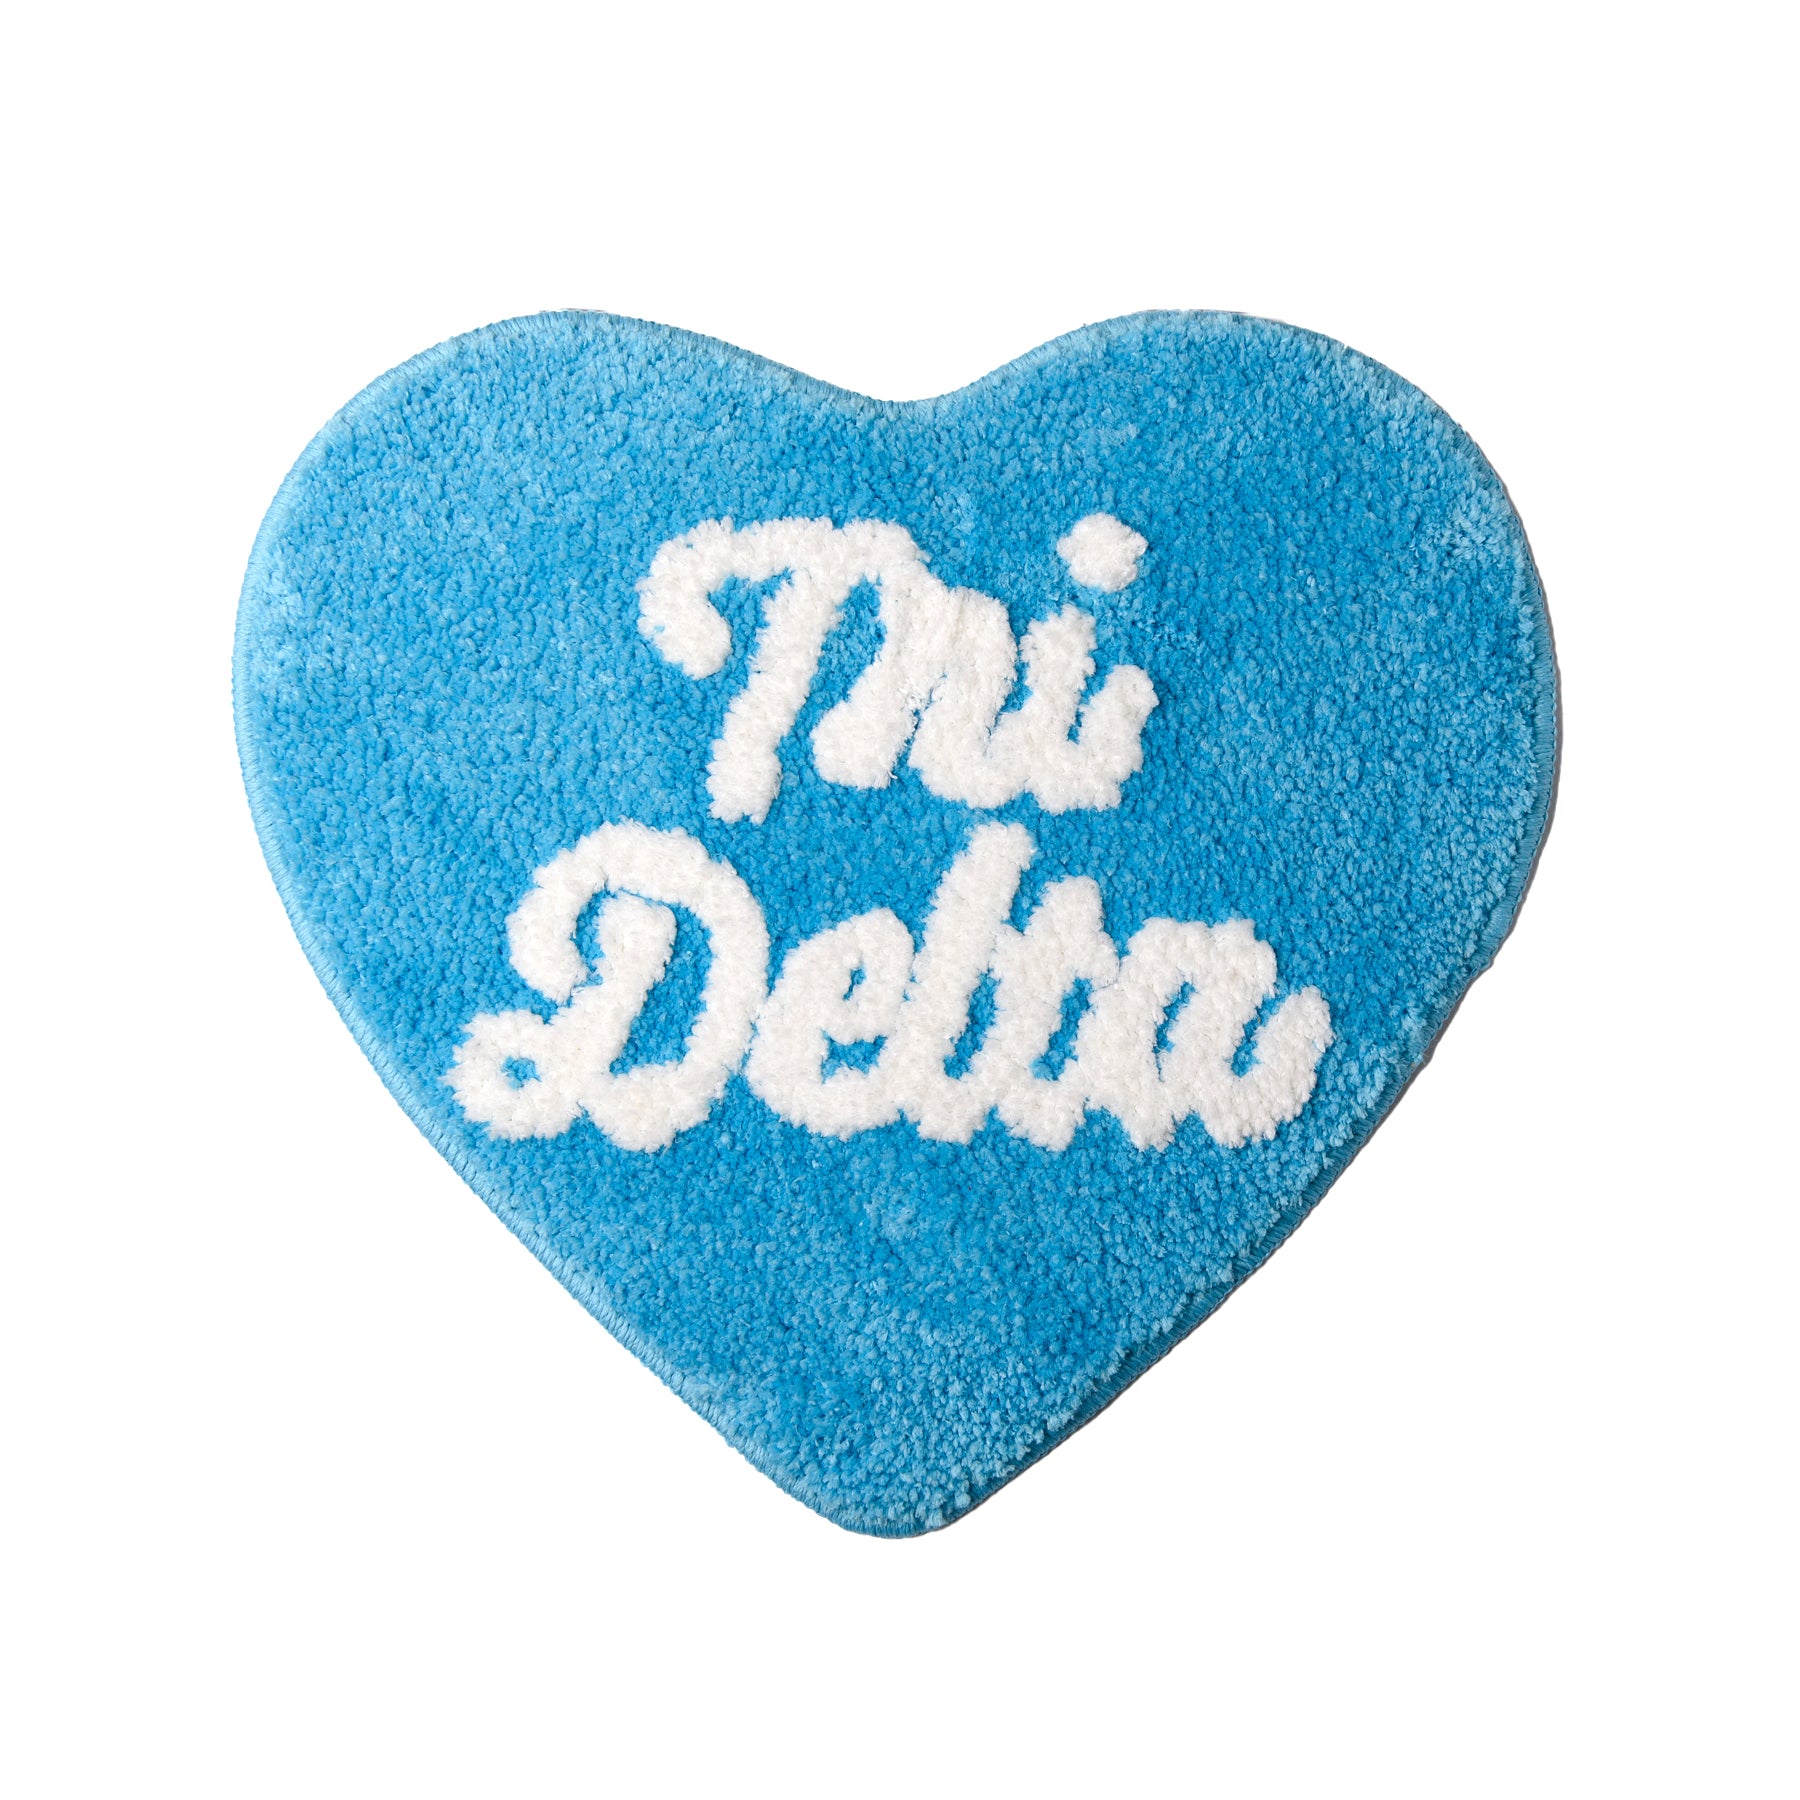 Tri-Delta Heart Mini-Rug